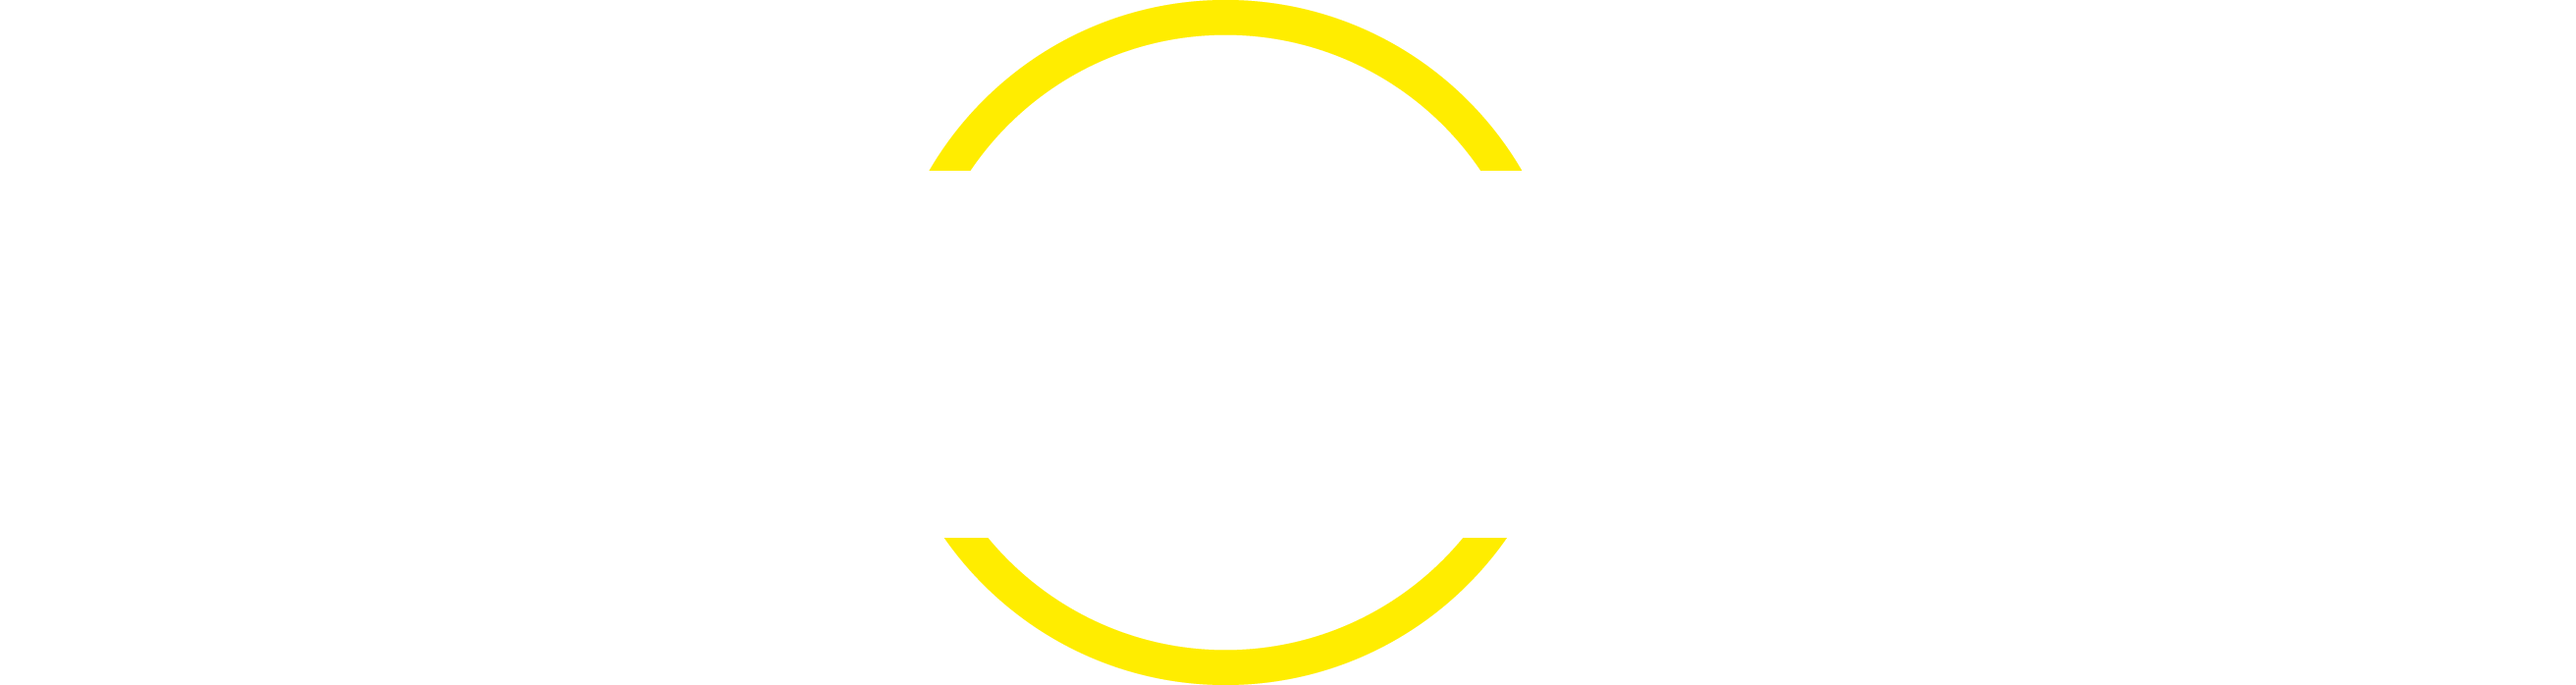 ceneti_logo